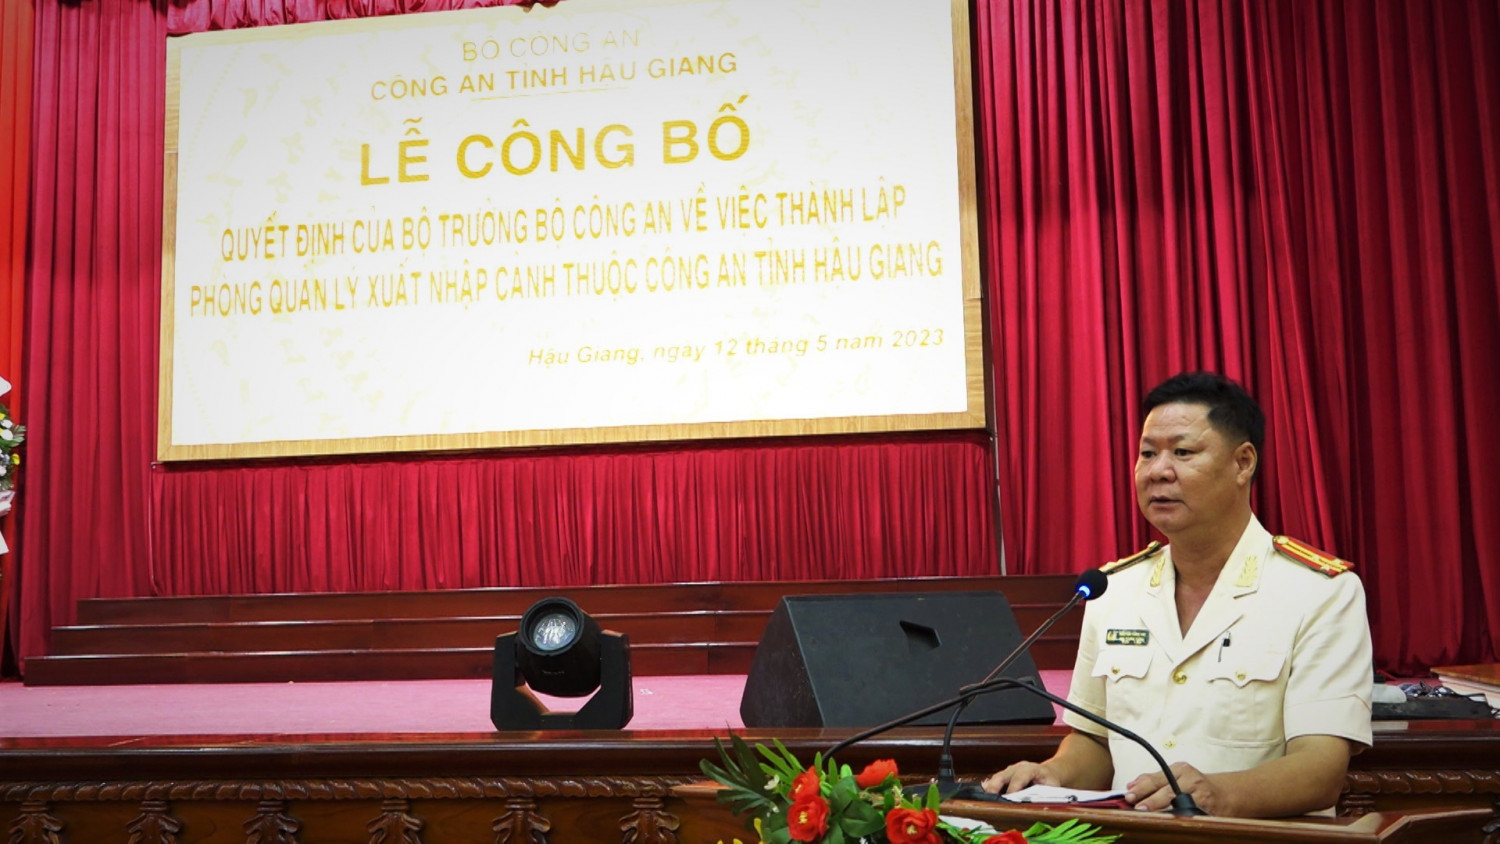 Thượng tá Nguyễn Hồng Hải, Trưởng phòng, Phòng Quản lý xuất nhập cảnh phát biểu tiếp thu ý kiến chỉ đạo